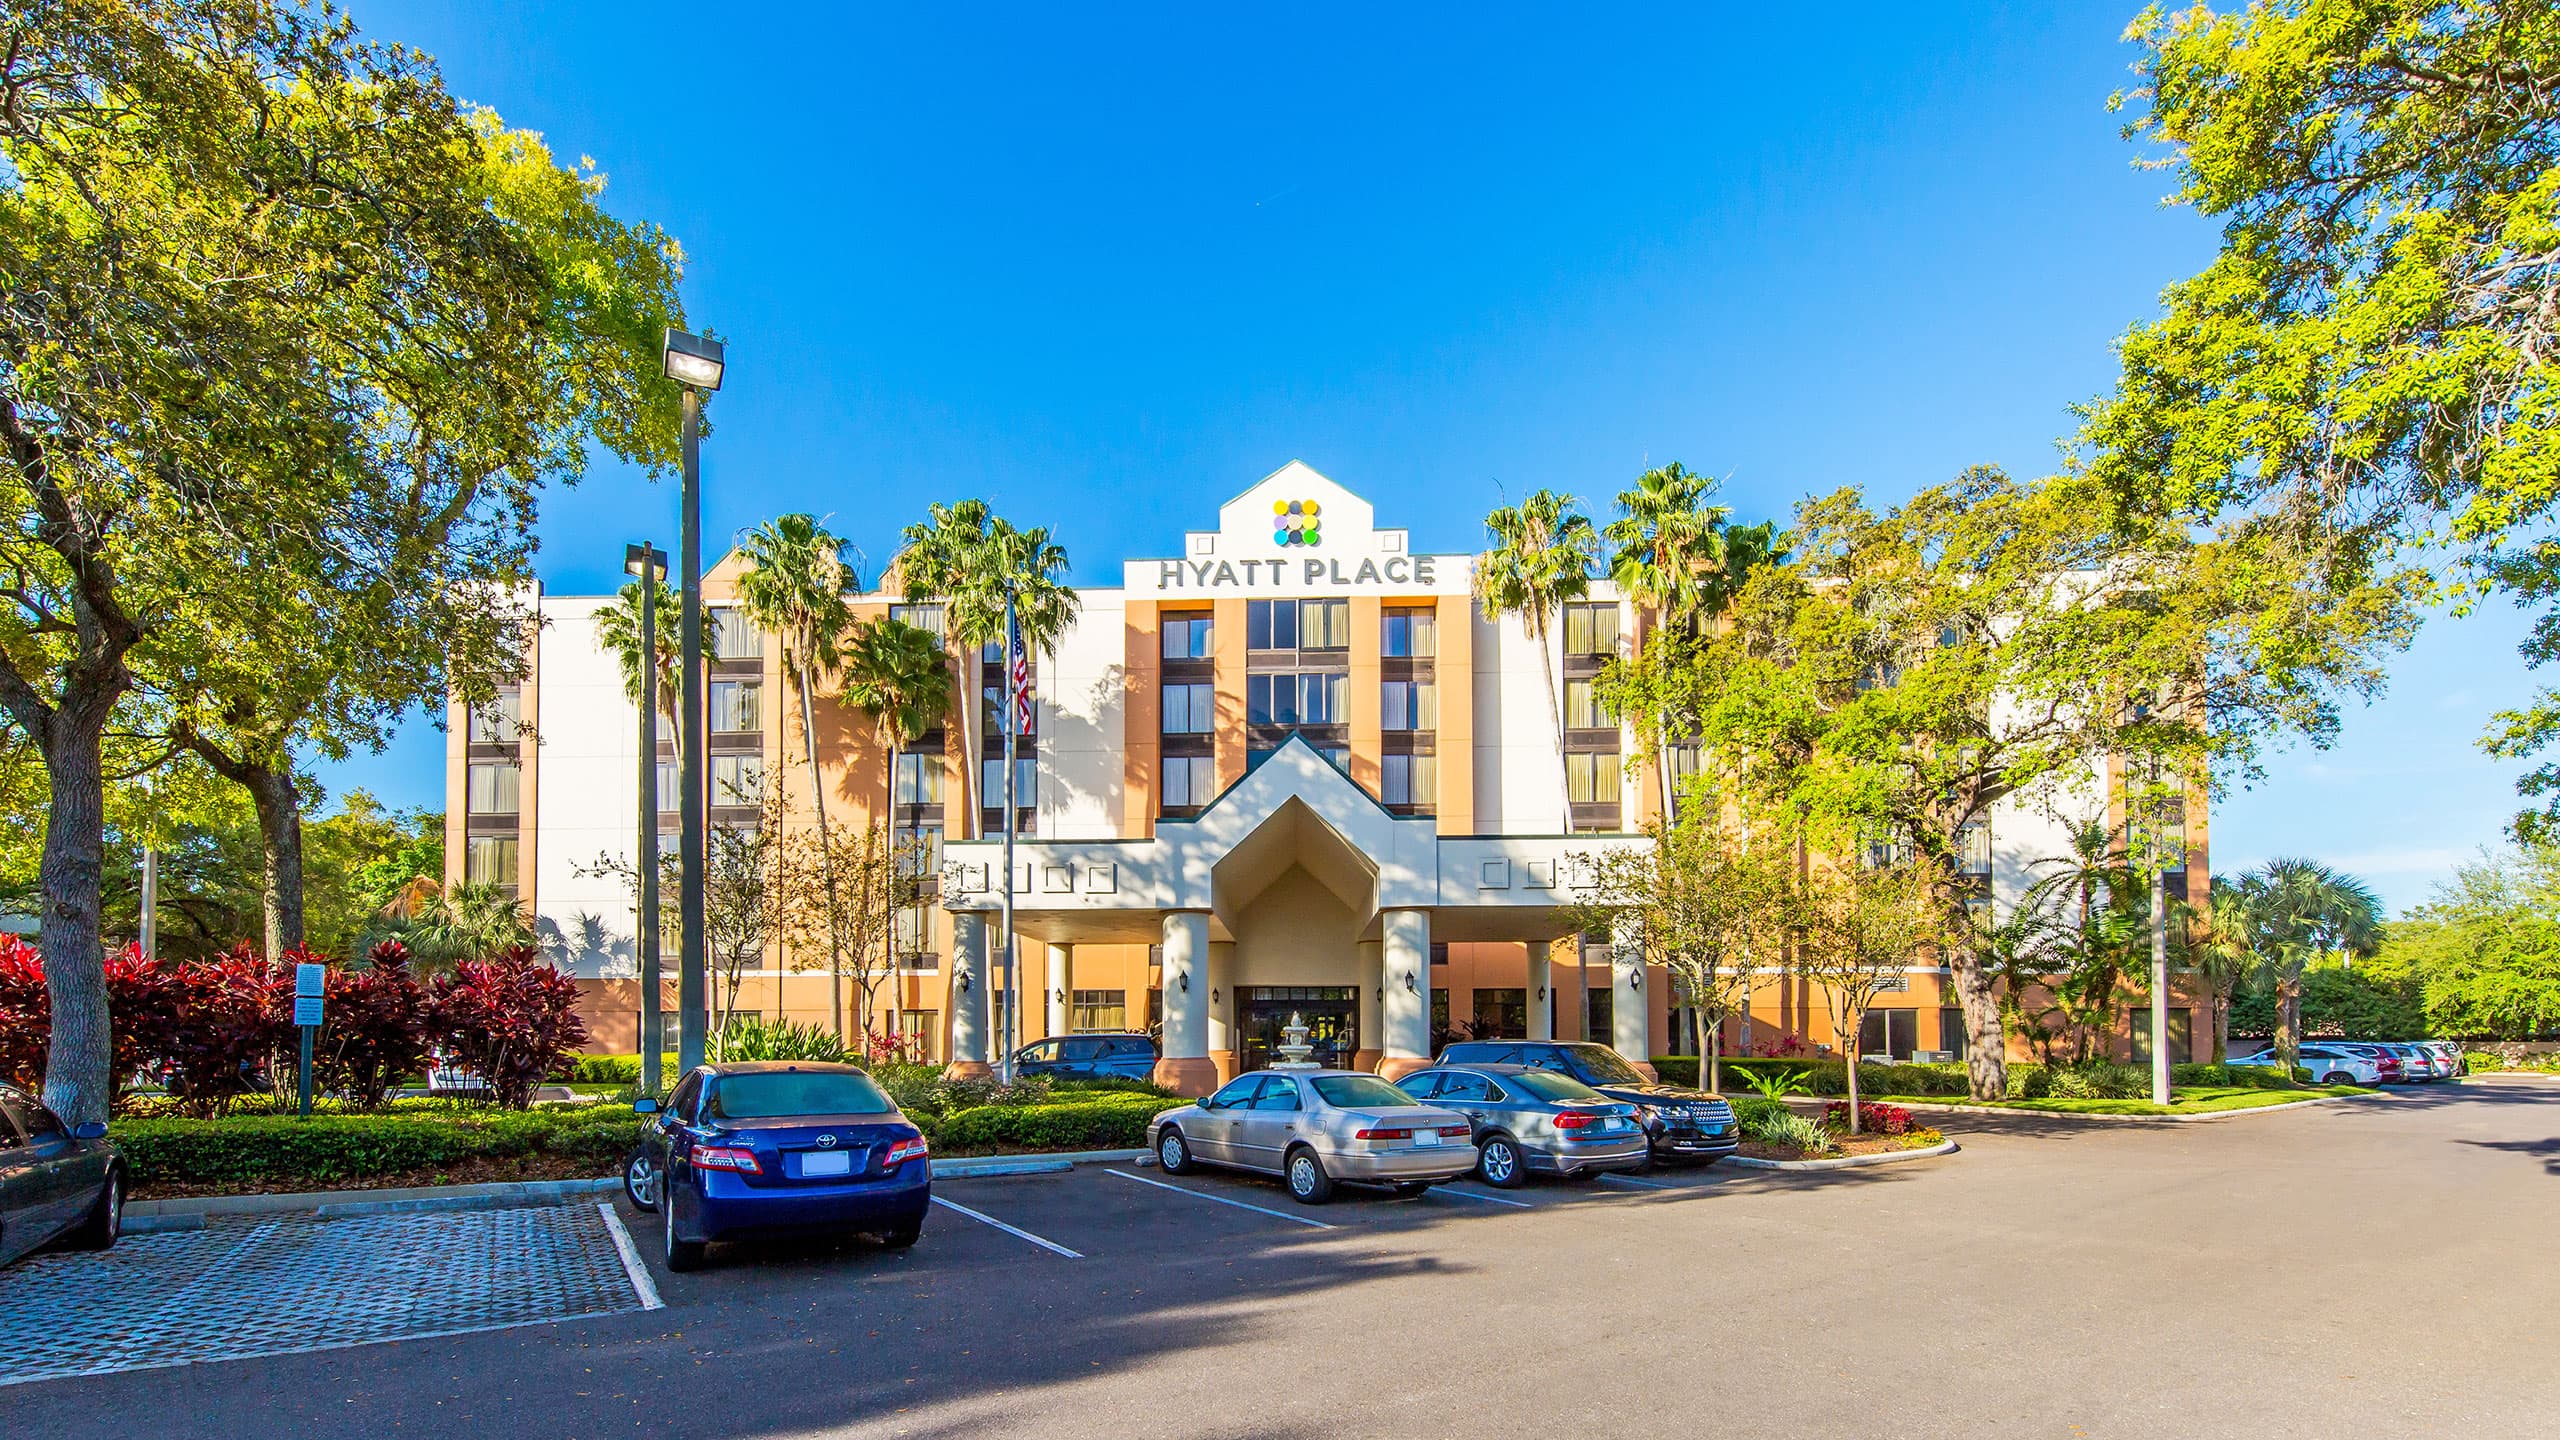 Busch Gardens Hotel In Tampa Fl Hyatt Place Hotel In Tampa